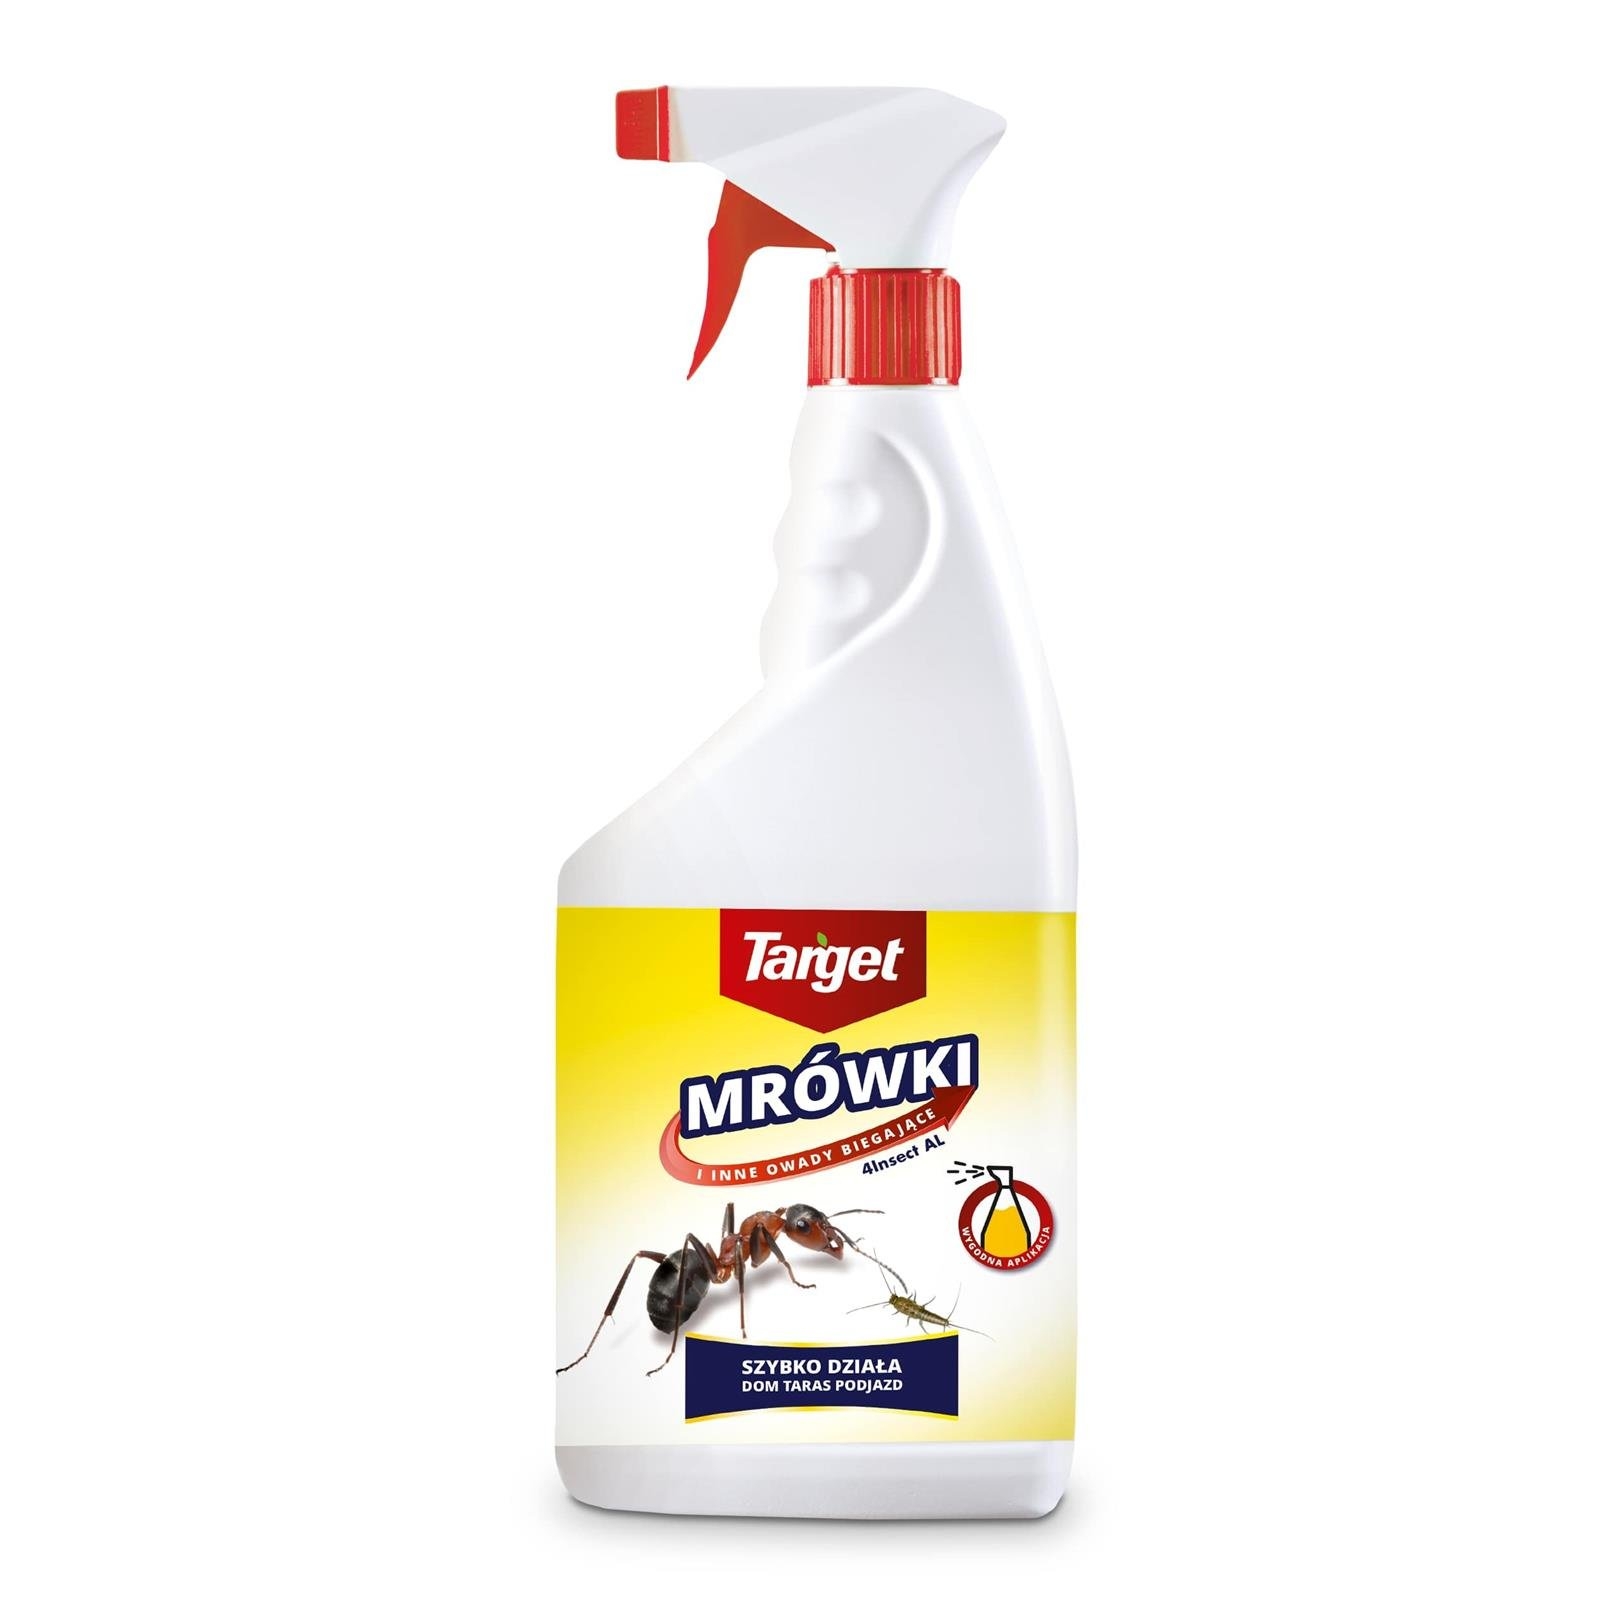 Zdjęcia - Odstraszacz owadów i zwierząt Target Spray na mrówki – 4Insect AL – 600 ml 